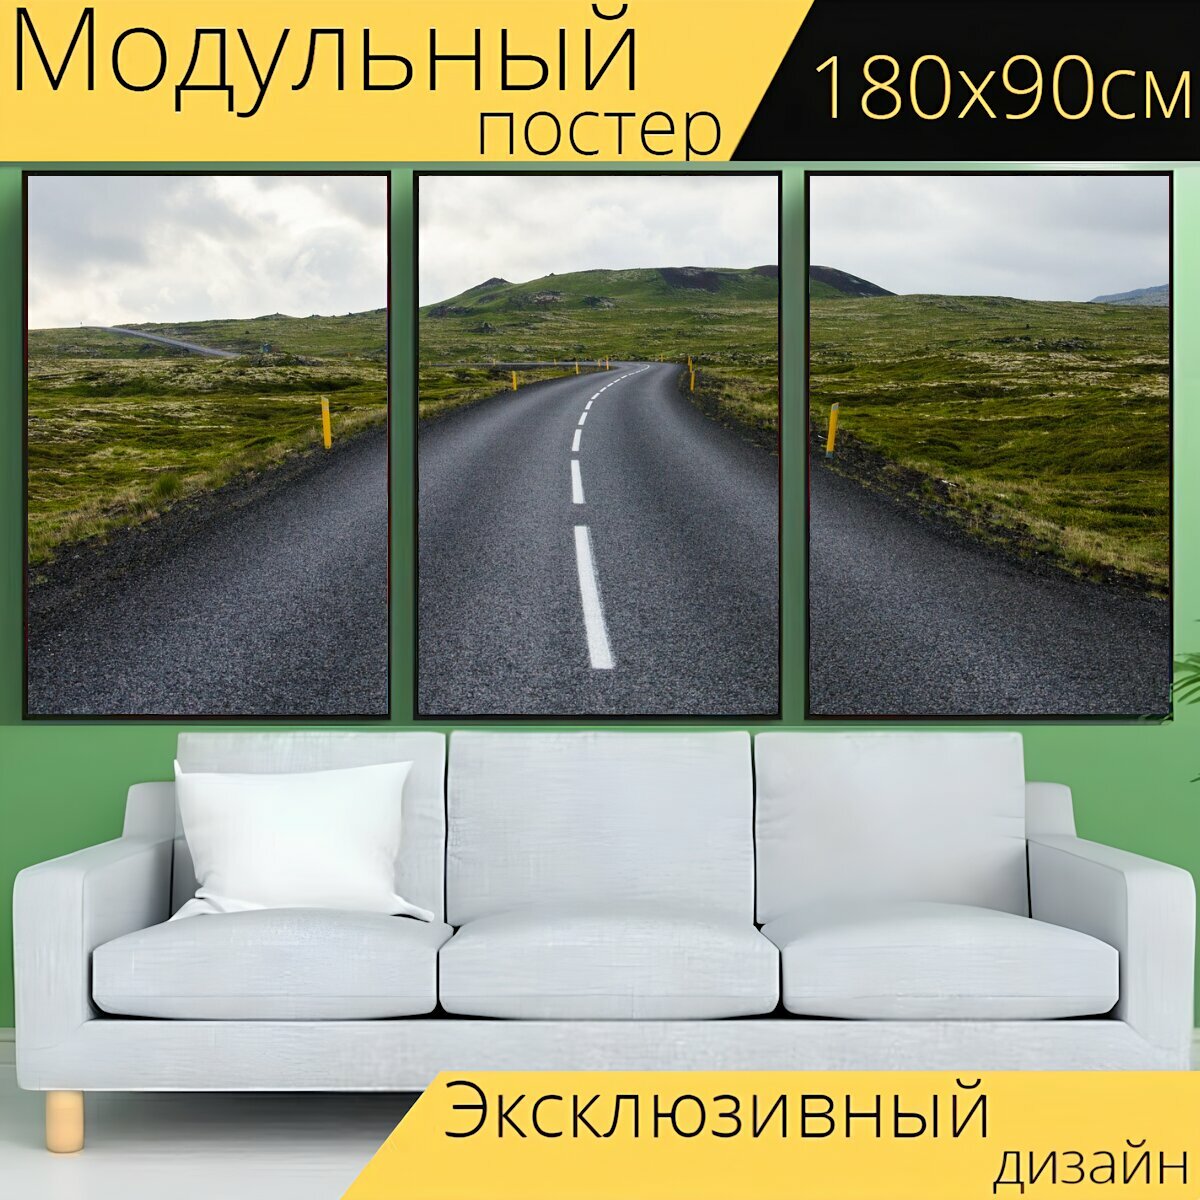 Модульный постер "Дорога, путешествие, путешествовать" 180 x 90 см. для интерьера